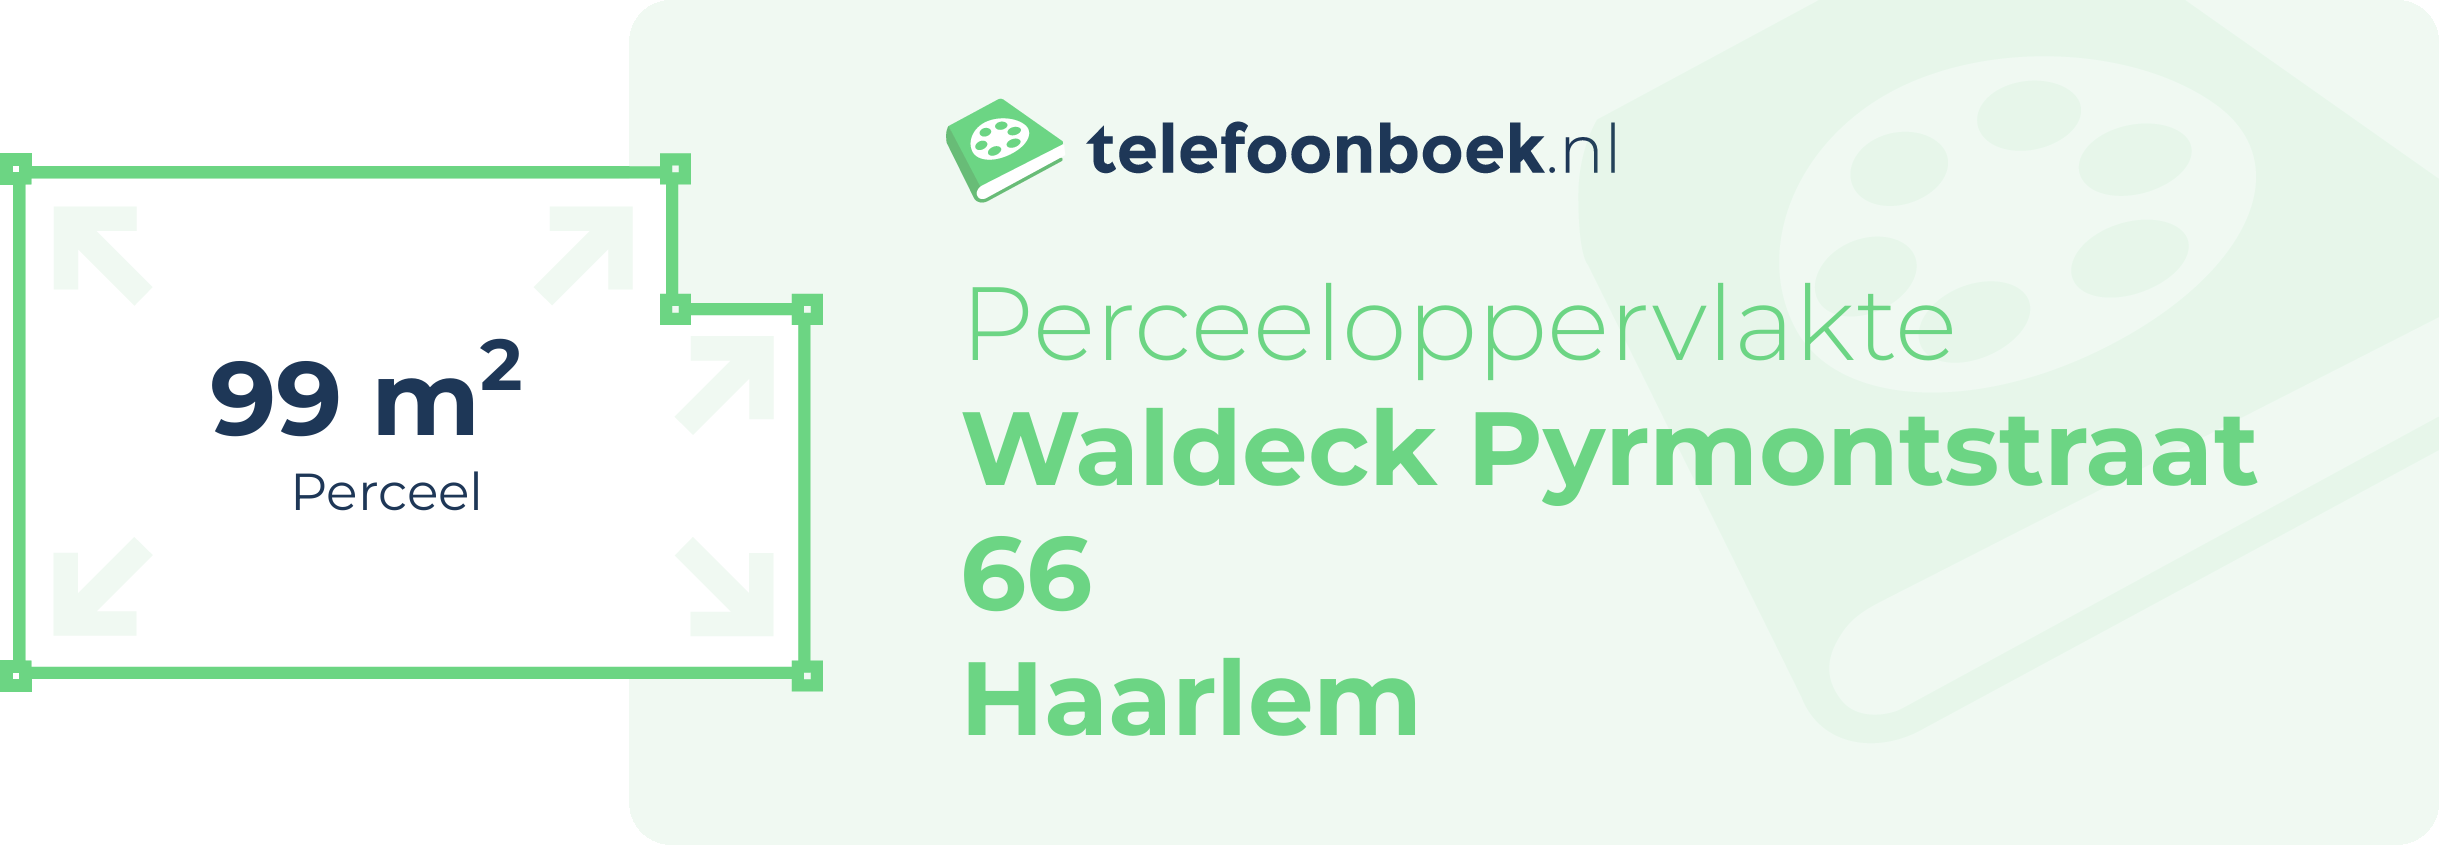 Perceeloppervlakte Waldeck Pyrmontstraat 66 Haarlem